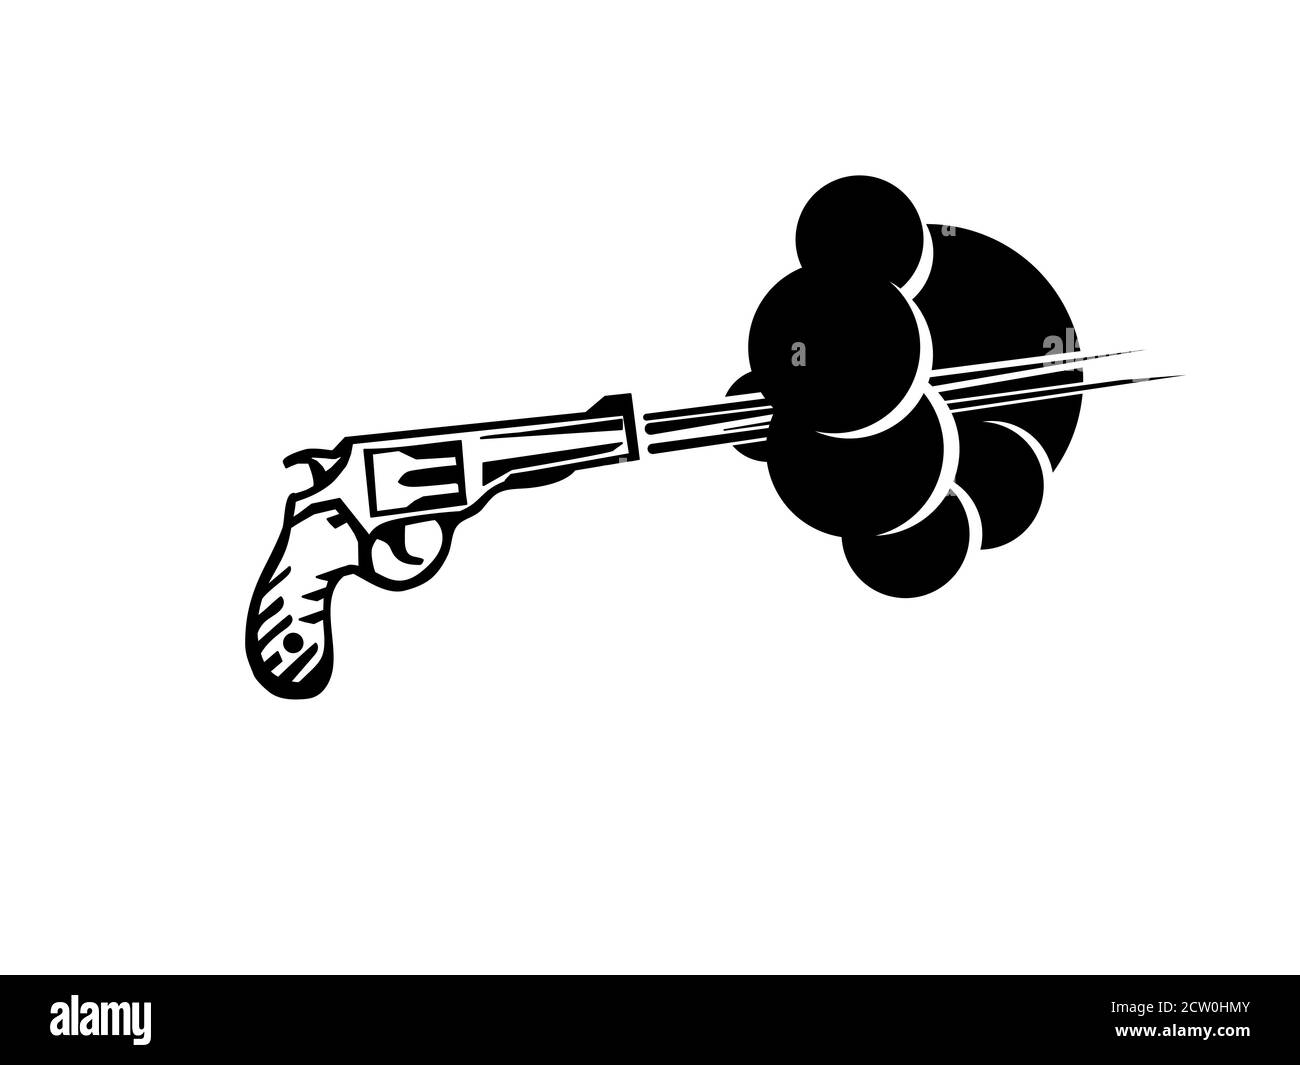 Revolver shoot vector illustration. Gun shoot drawing. Retro gun gangster symbol. Stock Vector